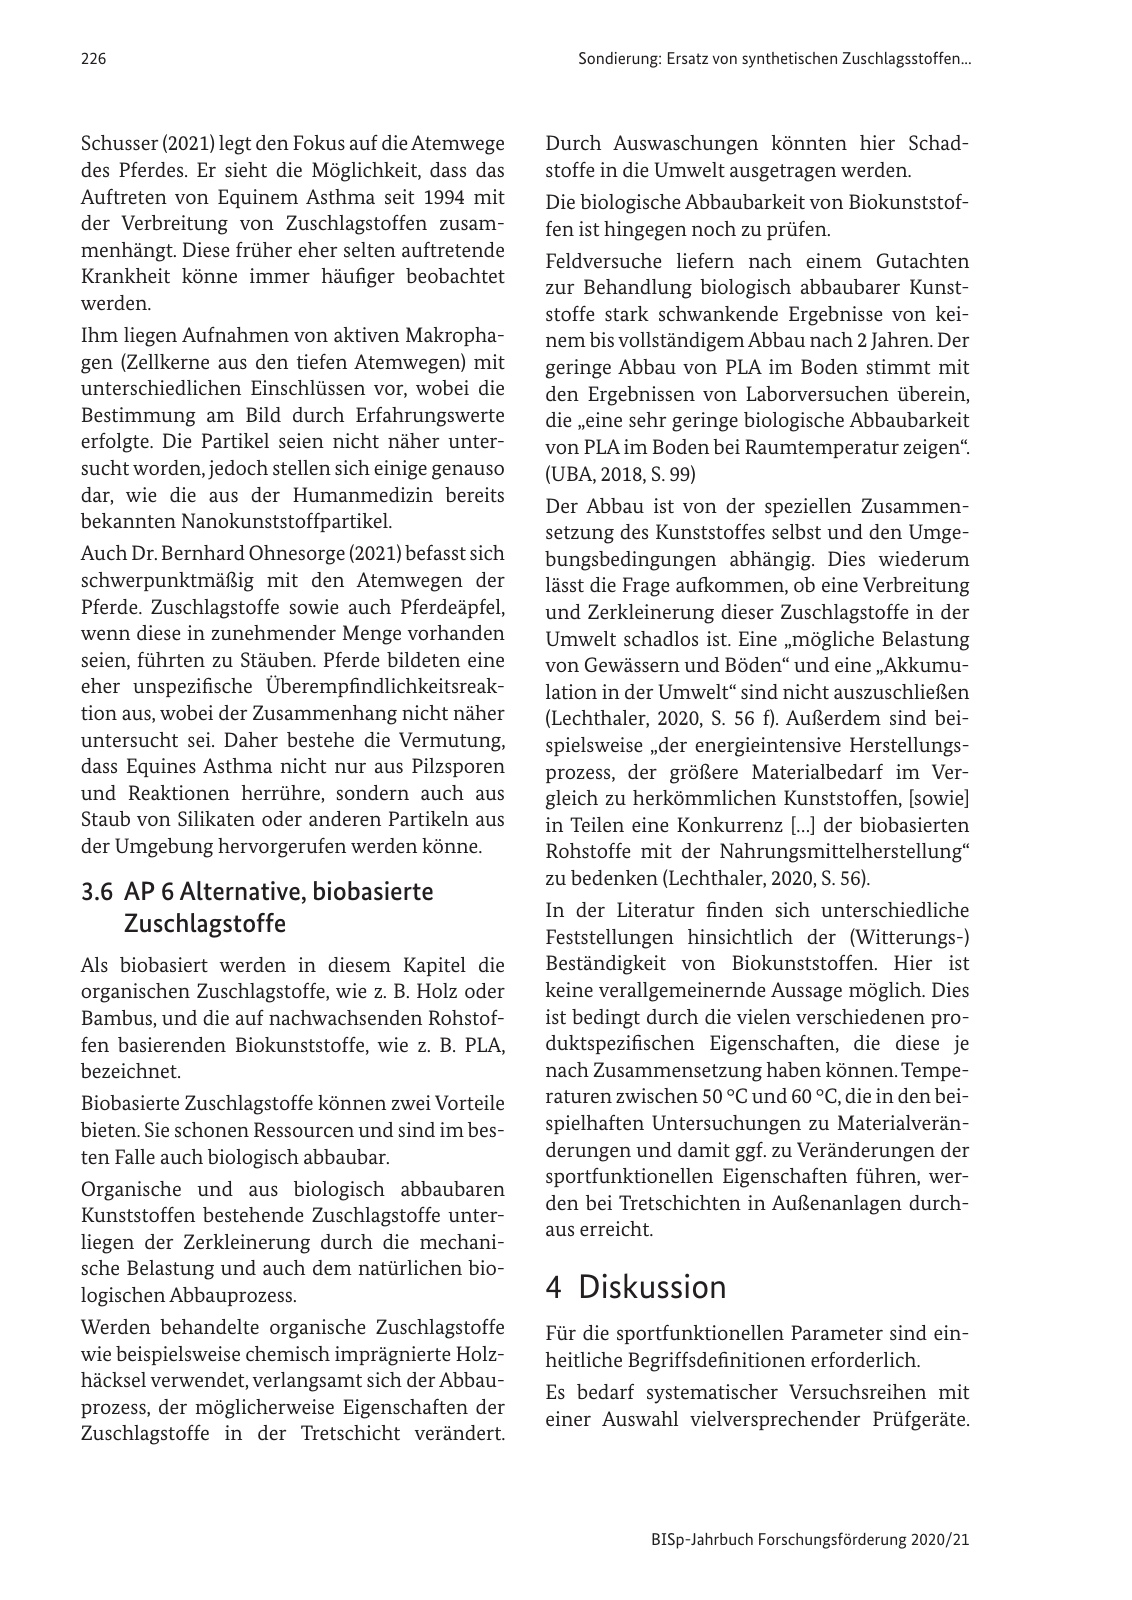 Vorschau BISp-Jahrbuch 2020/21 Seite 228